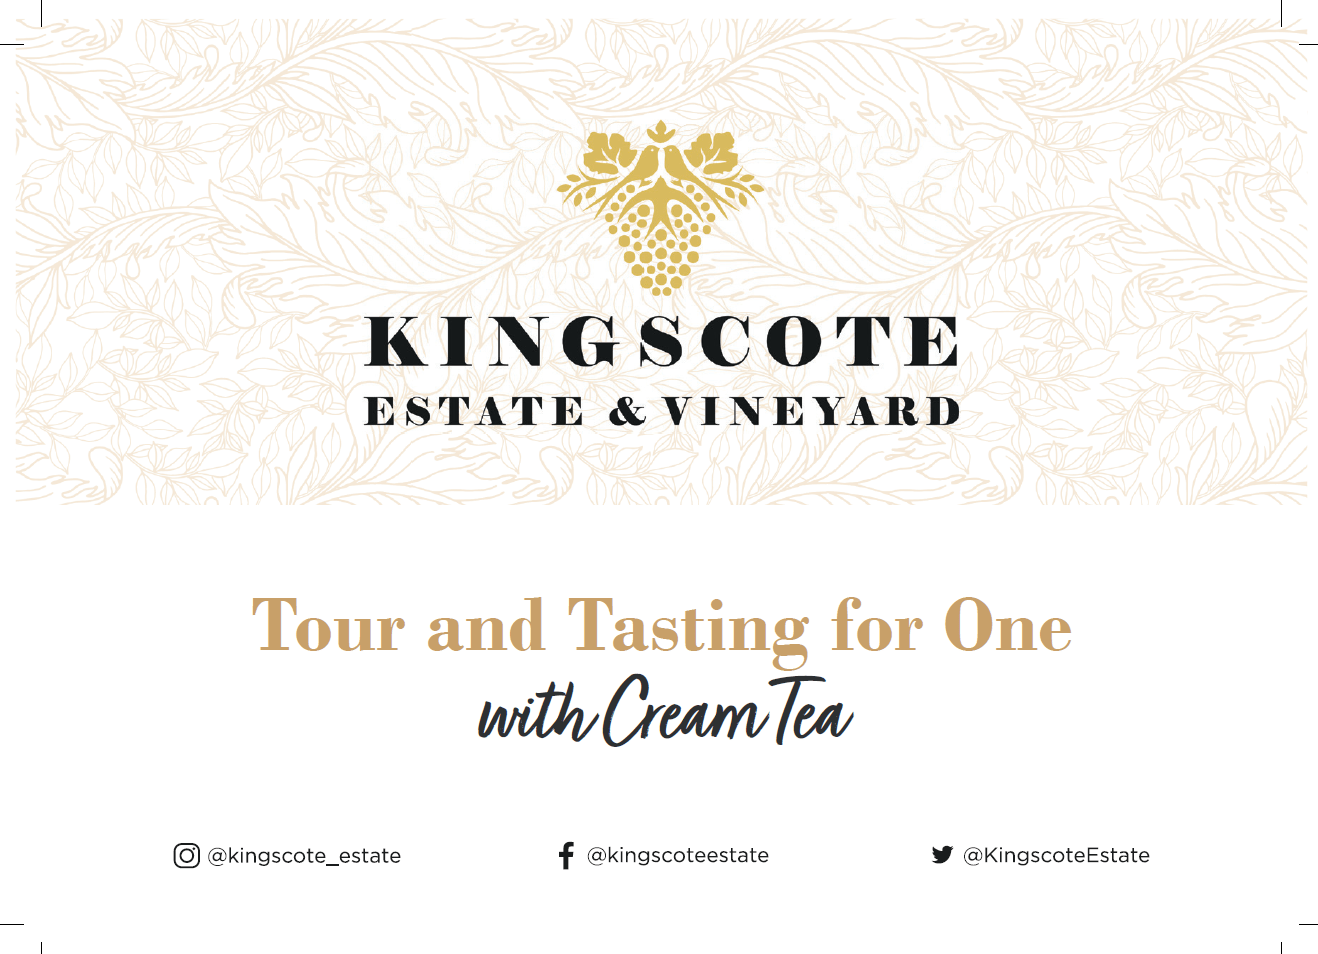 Kingscote Estate & Vineyard - Tour & Tasting Voucher with Cream Tea